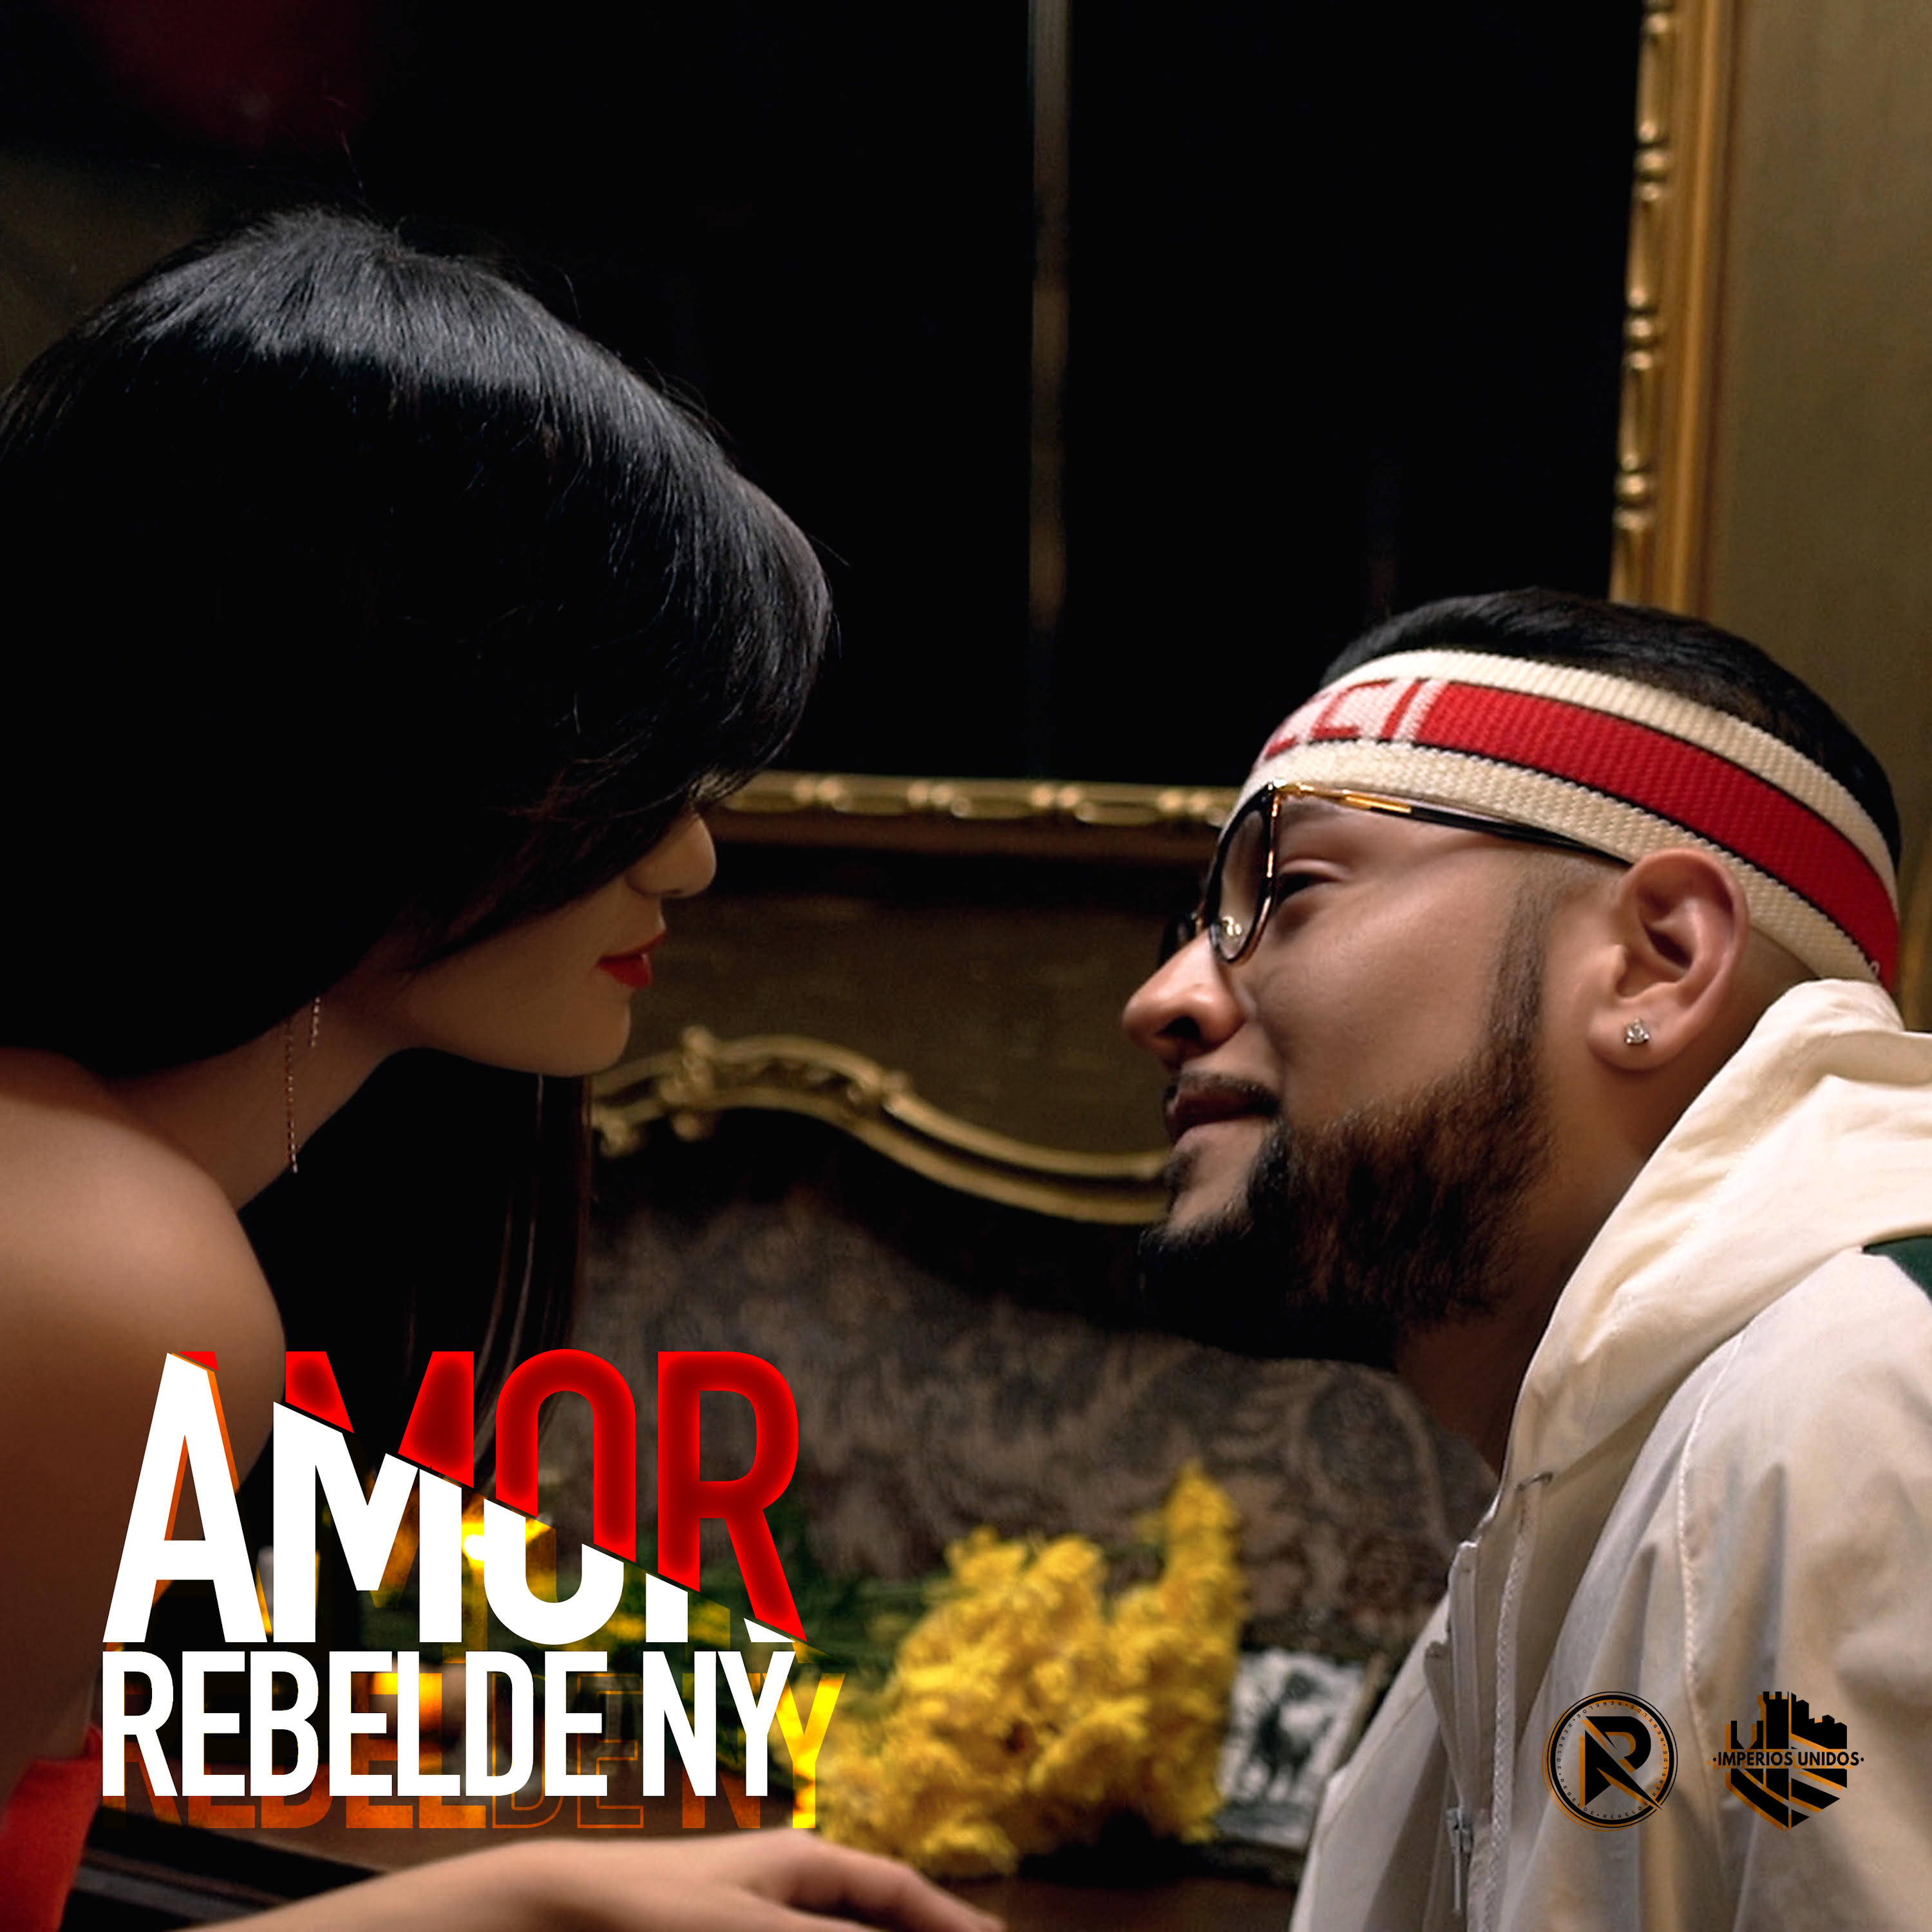 Rebelde NY continúa enamorando a la fanaticada mexicana con su single “Amor”.